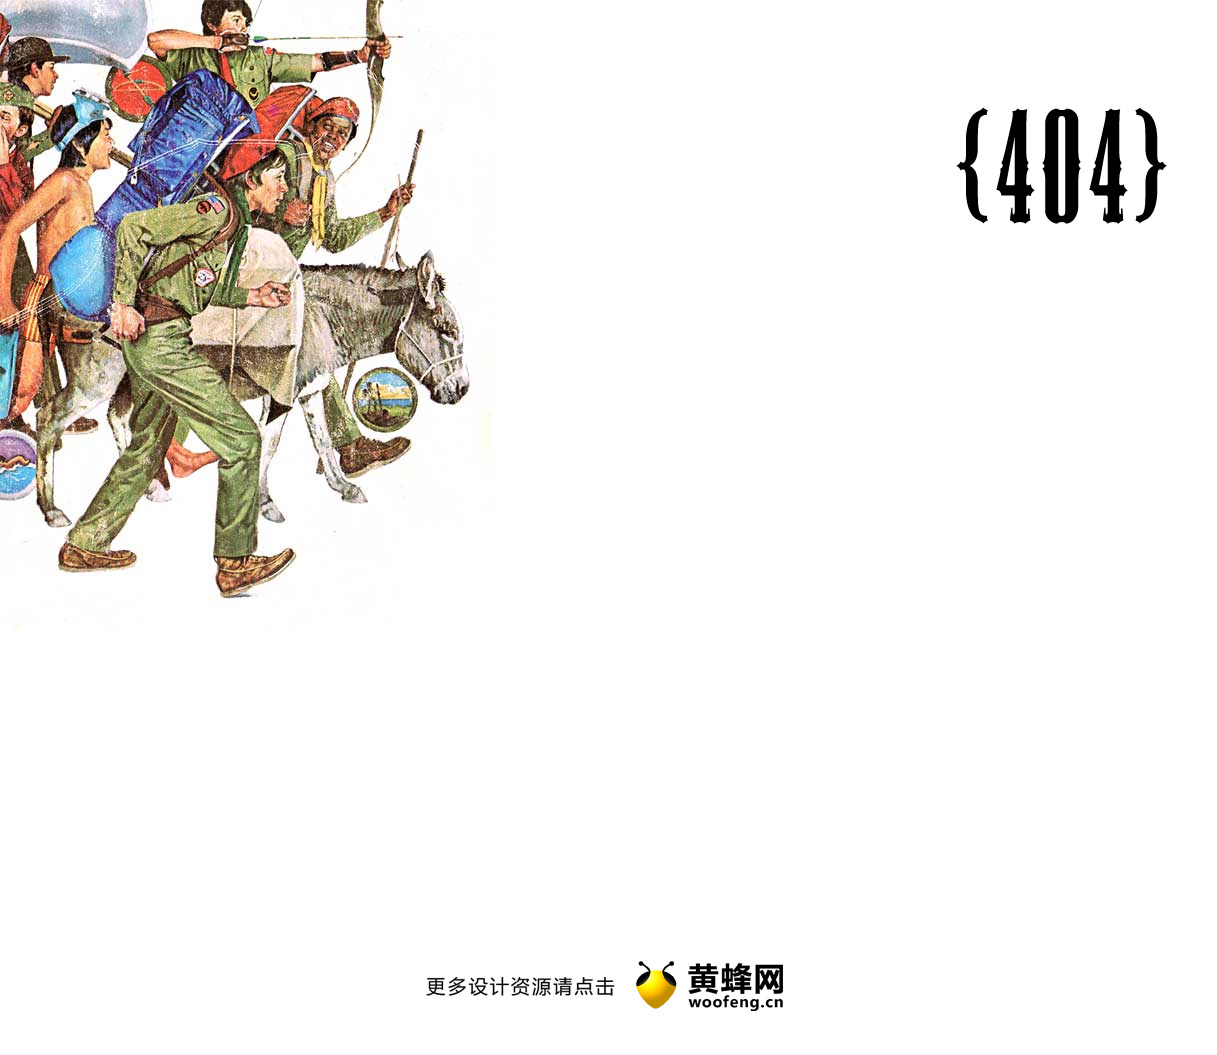 Chris Glass网站404创意页面设计，来源自黄蜂网https://woofeng.cn/webcut/